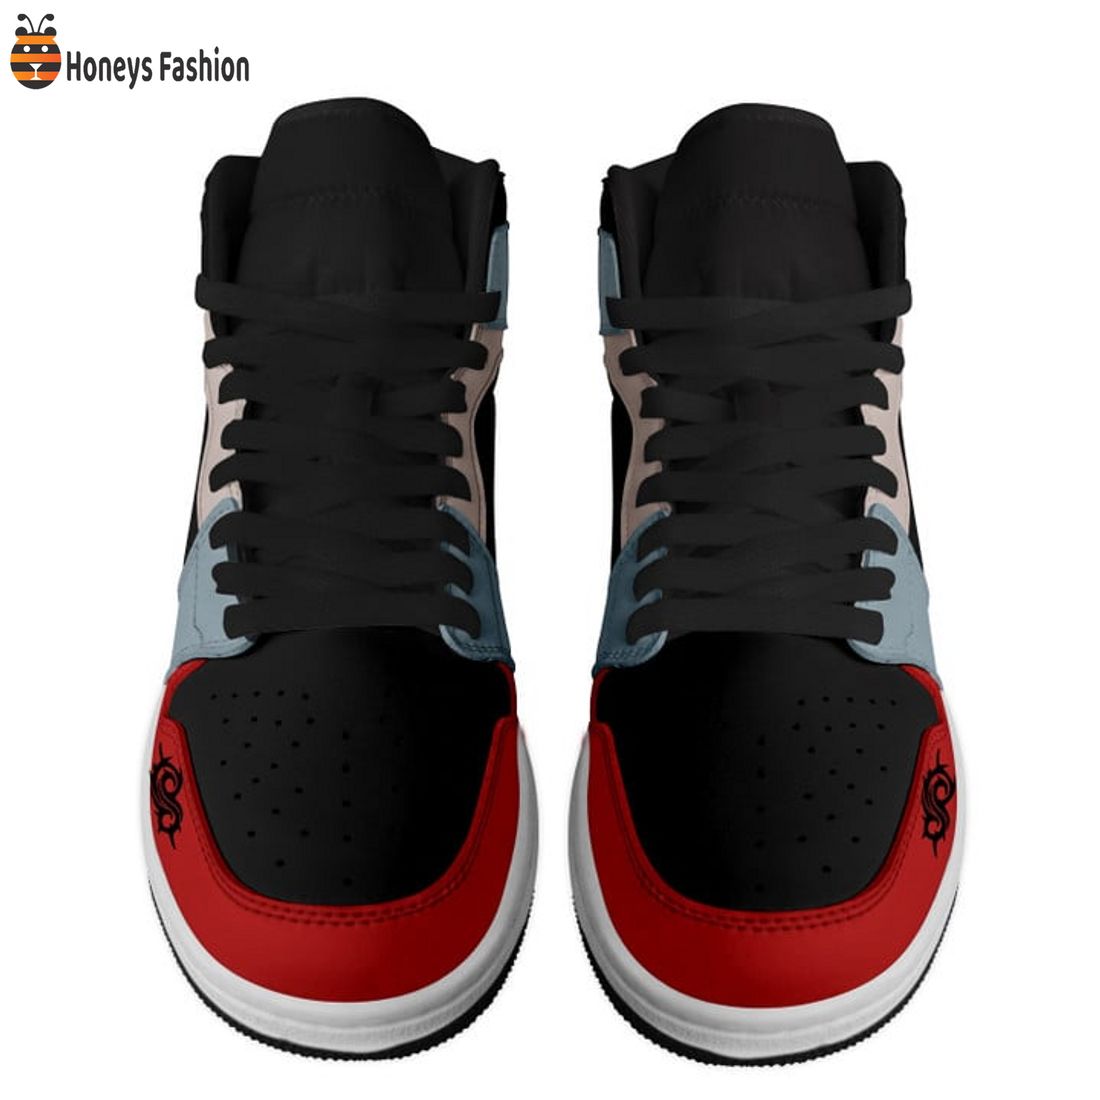 TRENDING Slipknot Psychosocial Nike Air Jordan 1 High Sneakers